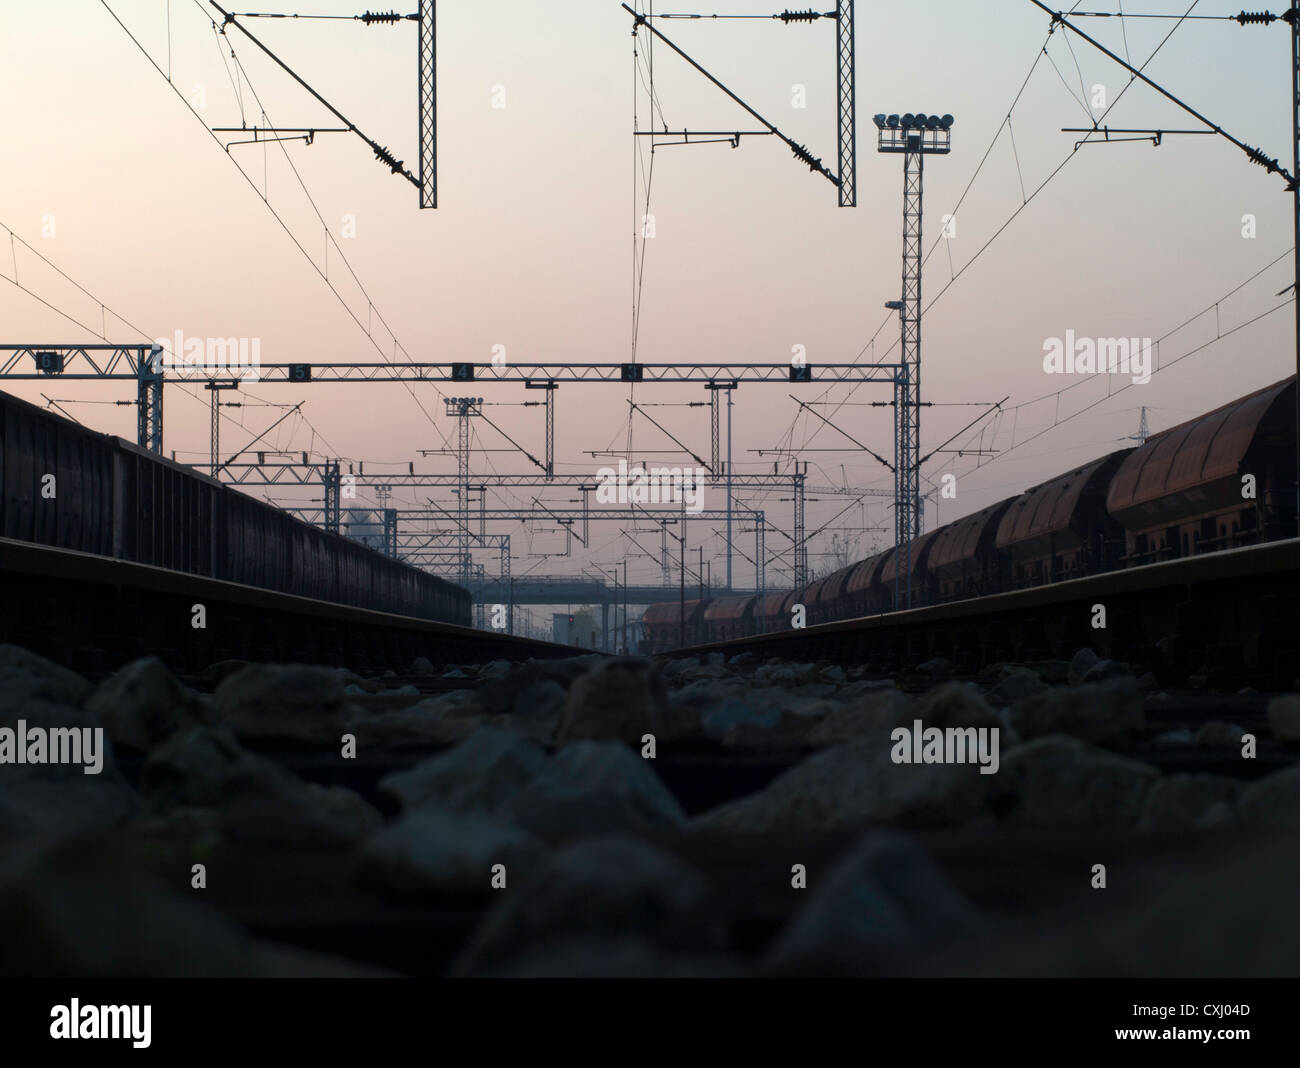 Stazione ferroviaria; dettagli dalla prospettiva insolita Foto Stock